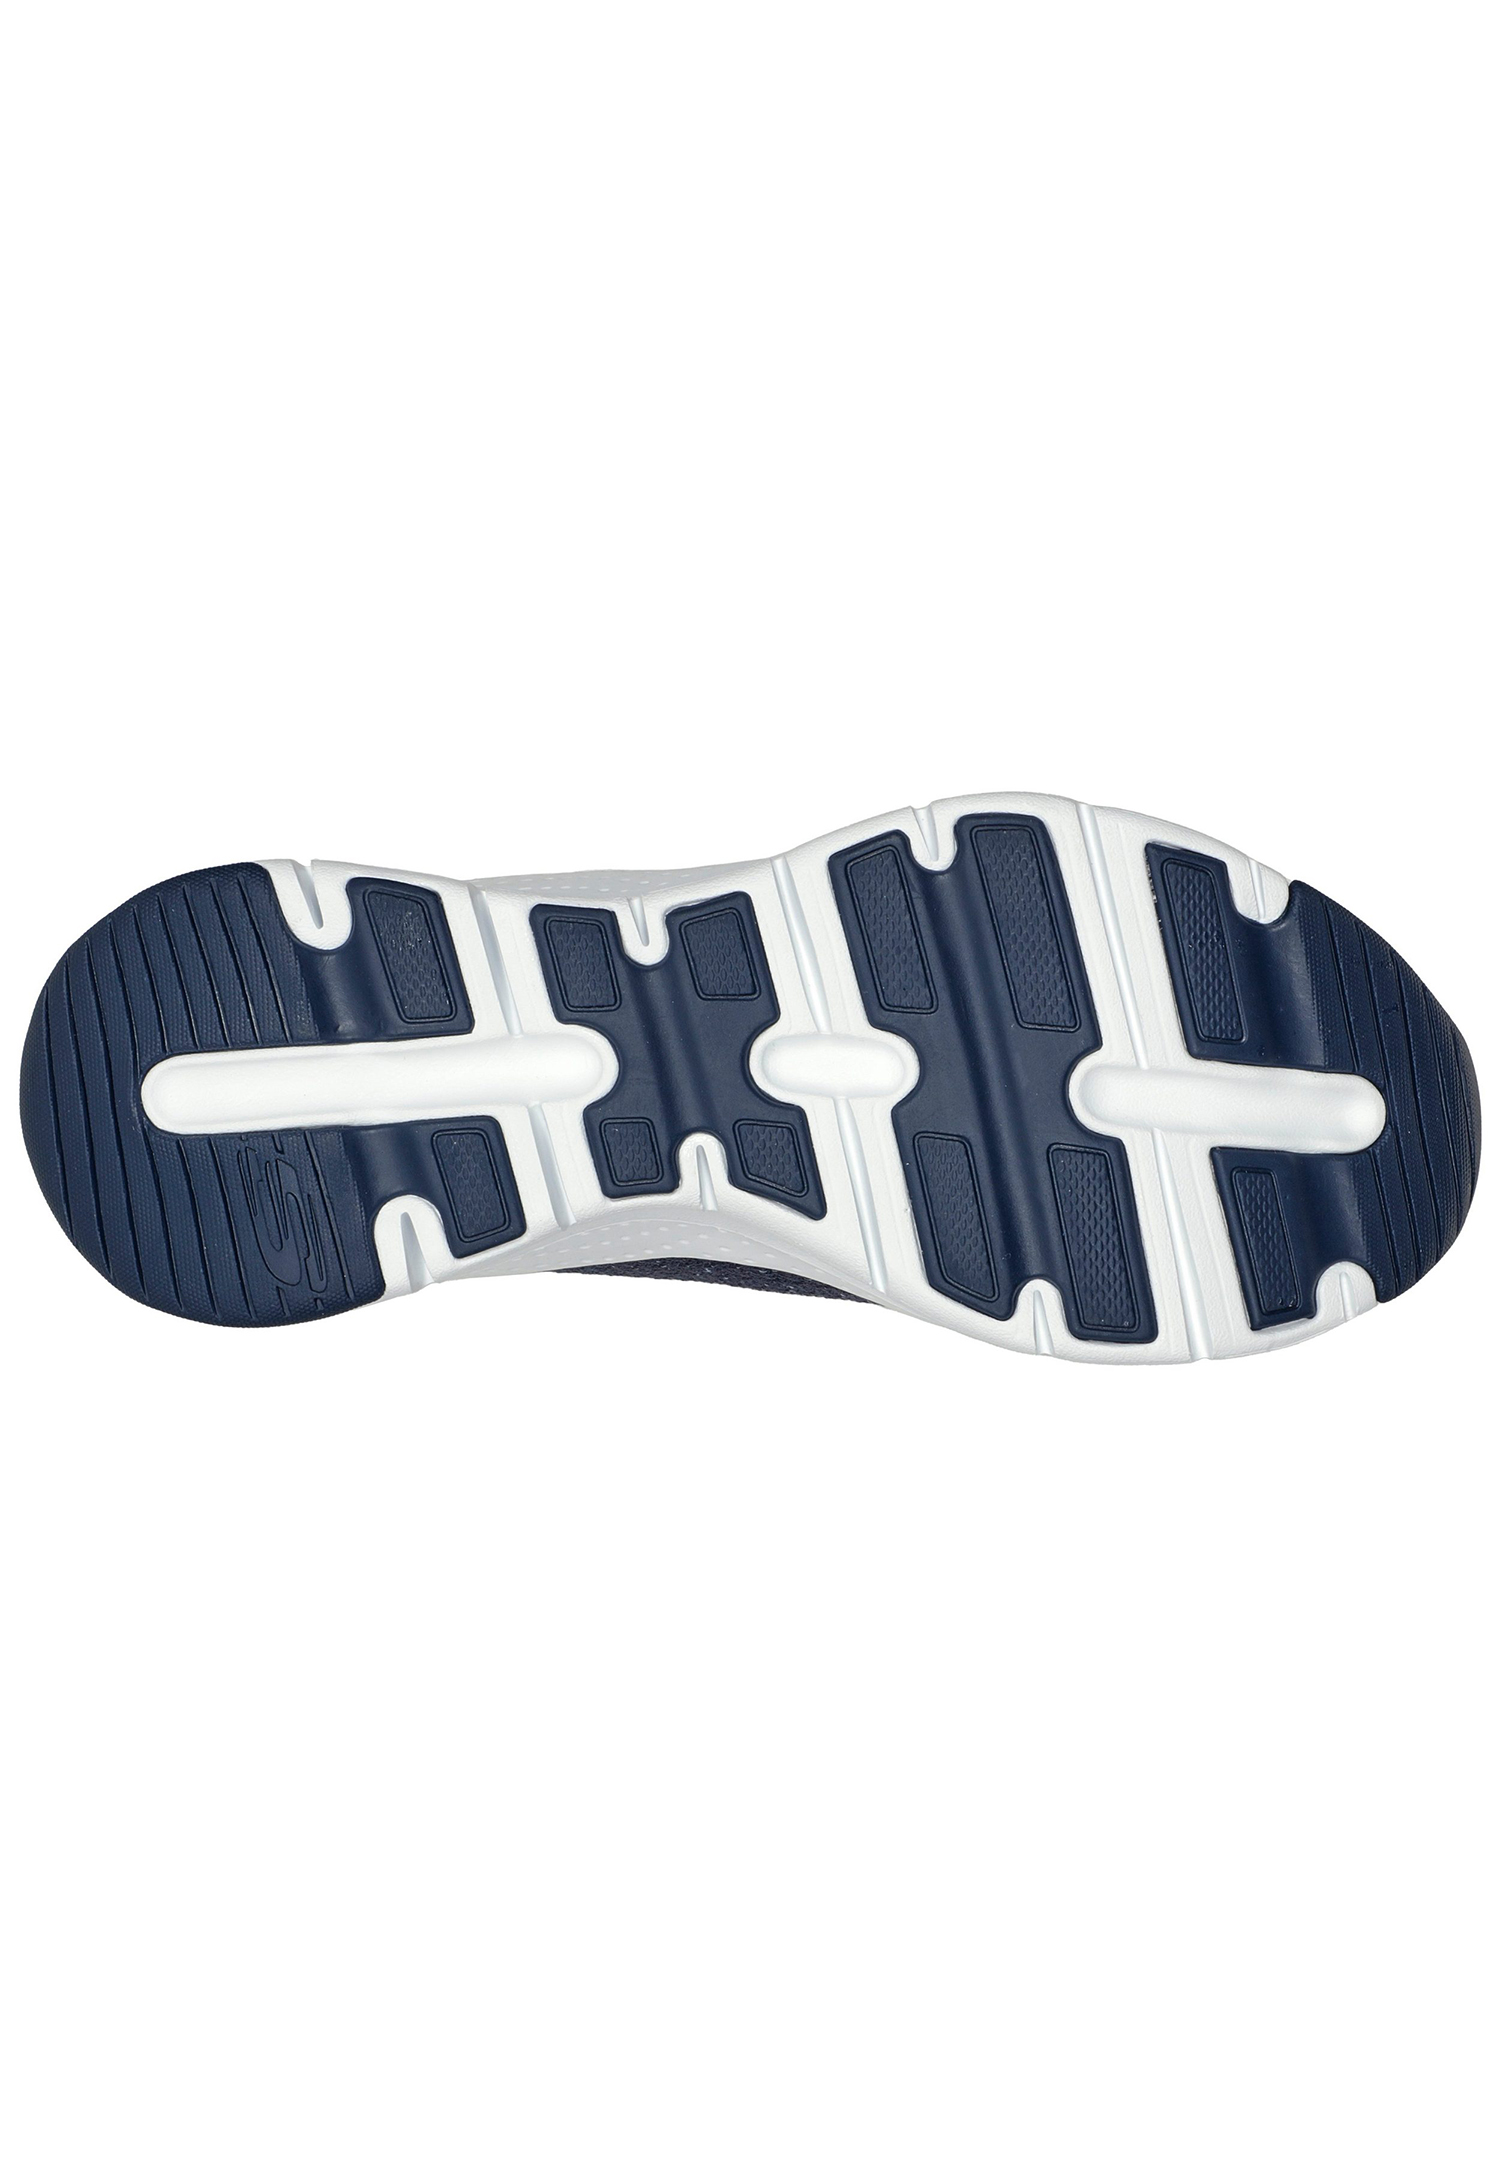 Skechers Arch Fit - GLEE FOR ALL Damen Sneaker 149713 NVPK blau